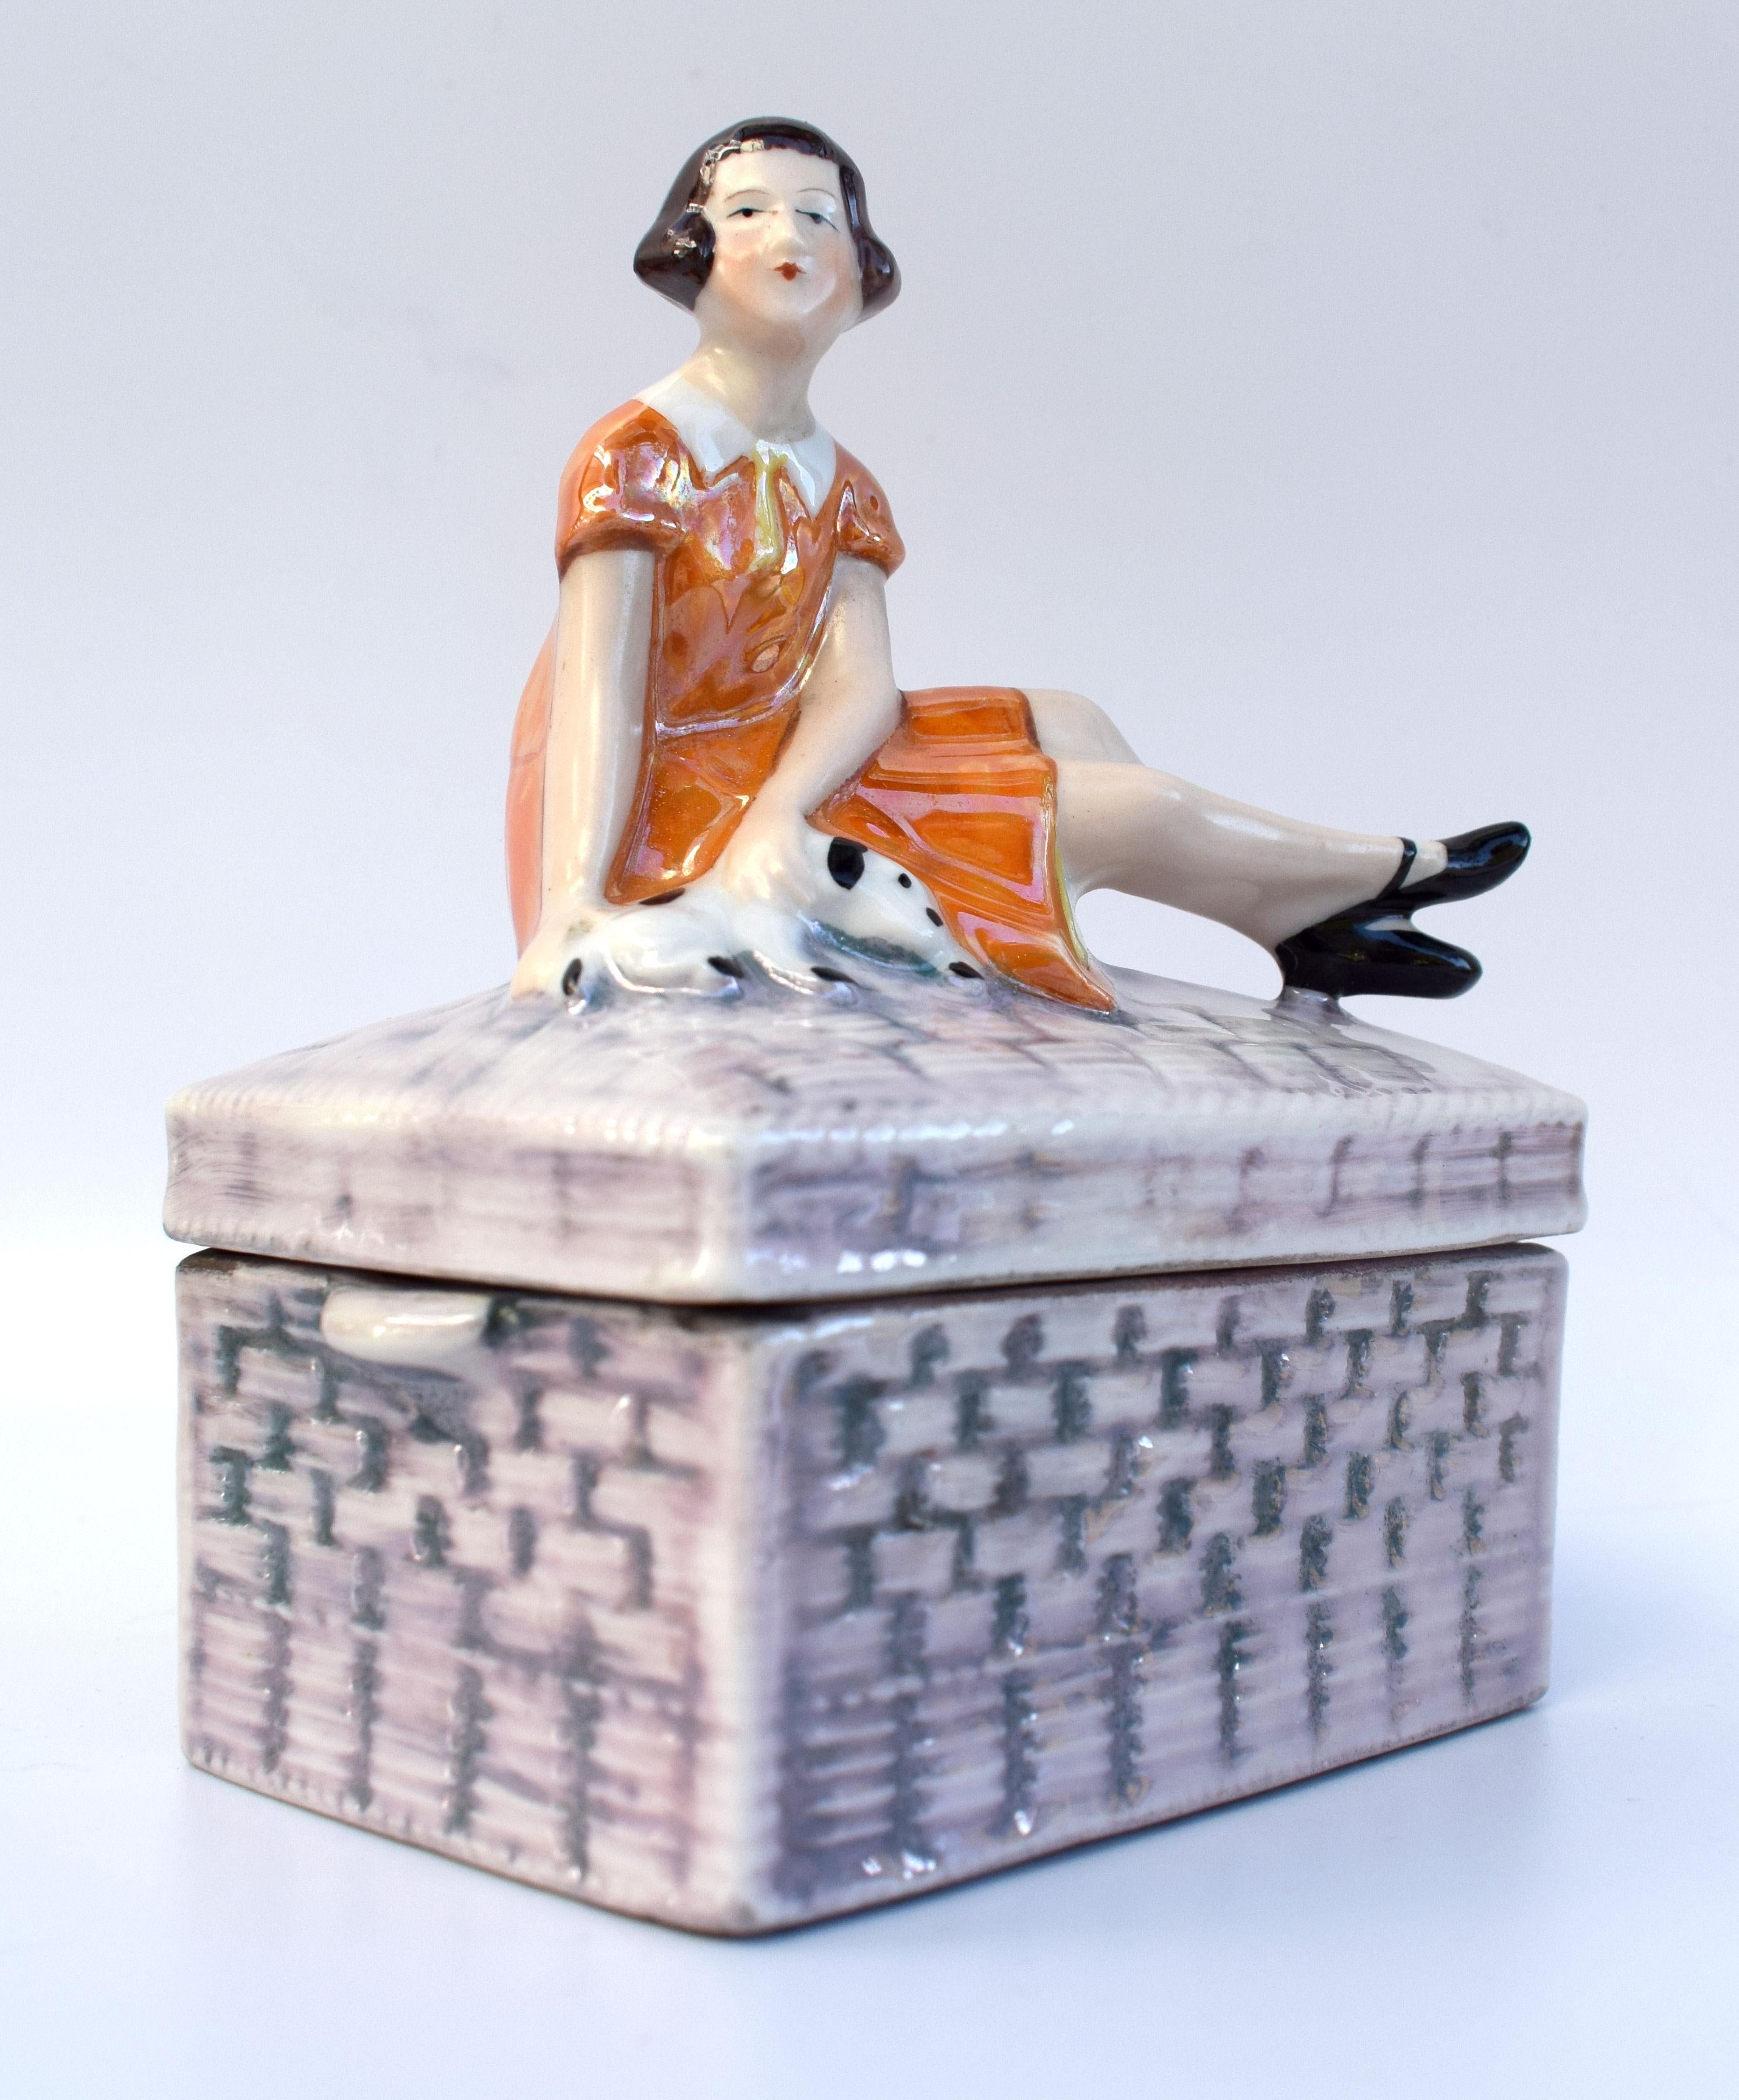 Remarquable et assez rare, cette boîte à poudre en porcelaine Art Déco des années 1930 avec finition lustrée représente une jeune fille assise sur un tronc d'osier caressant son chiot à côté d'elle. Magnifique coloration et détails. Un design rare